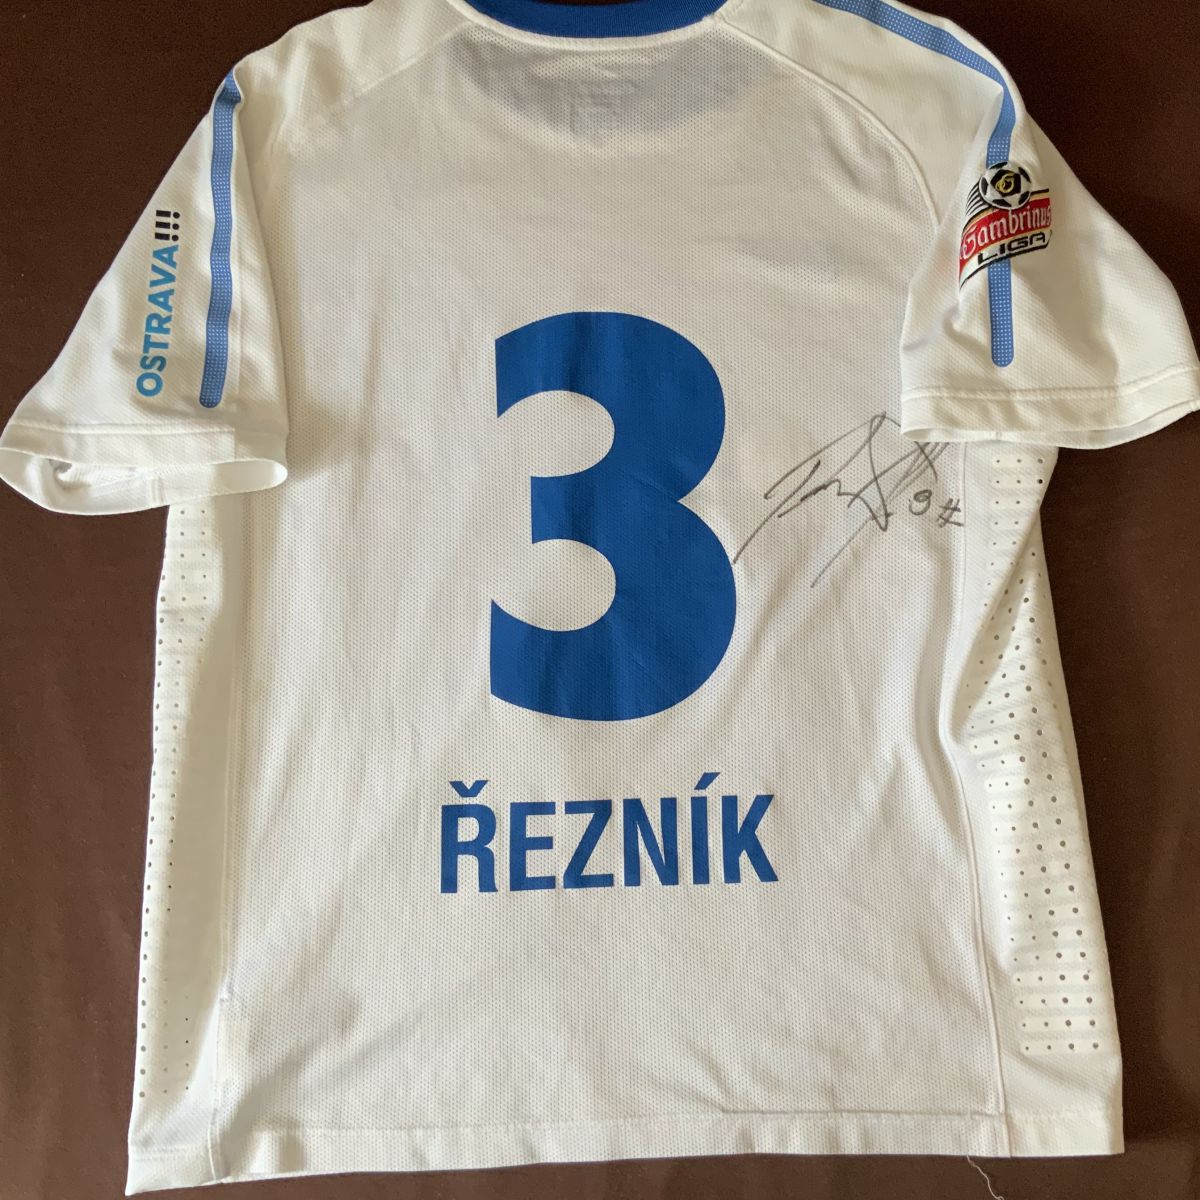 Originál hraný dres Řezníka  FC Baník Ostrava s podpisem photo